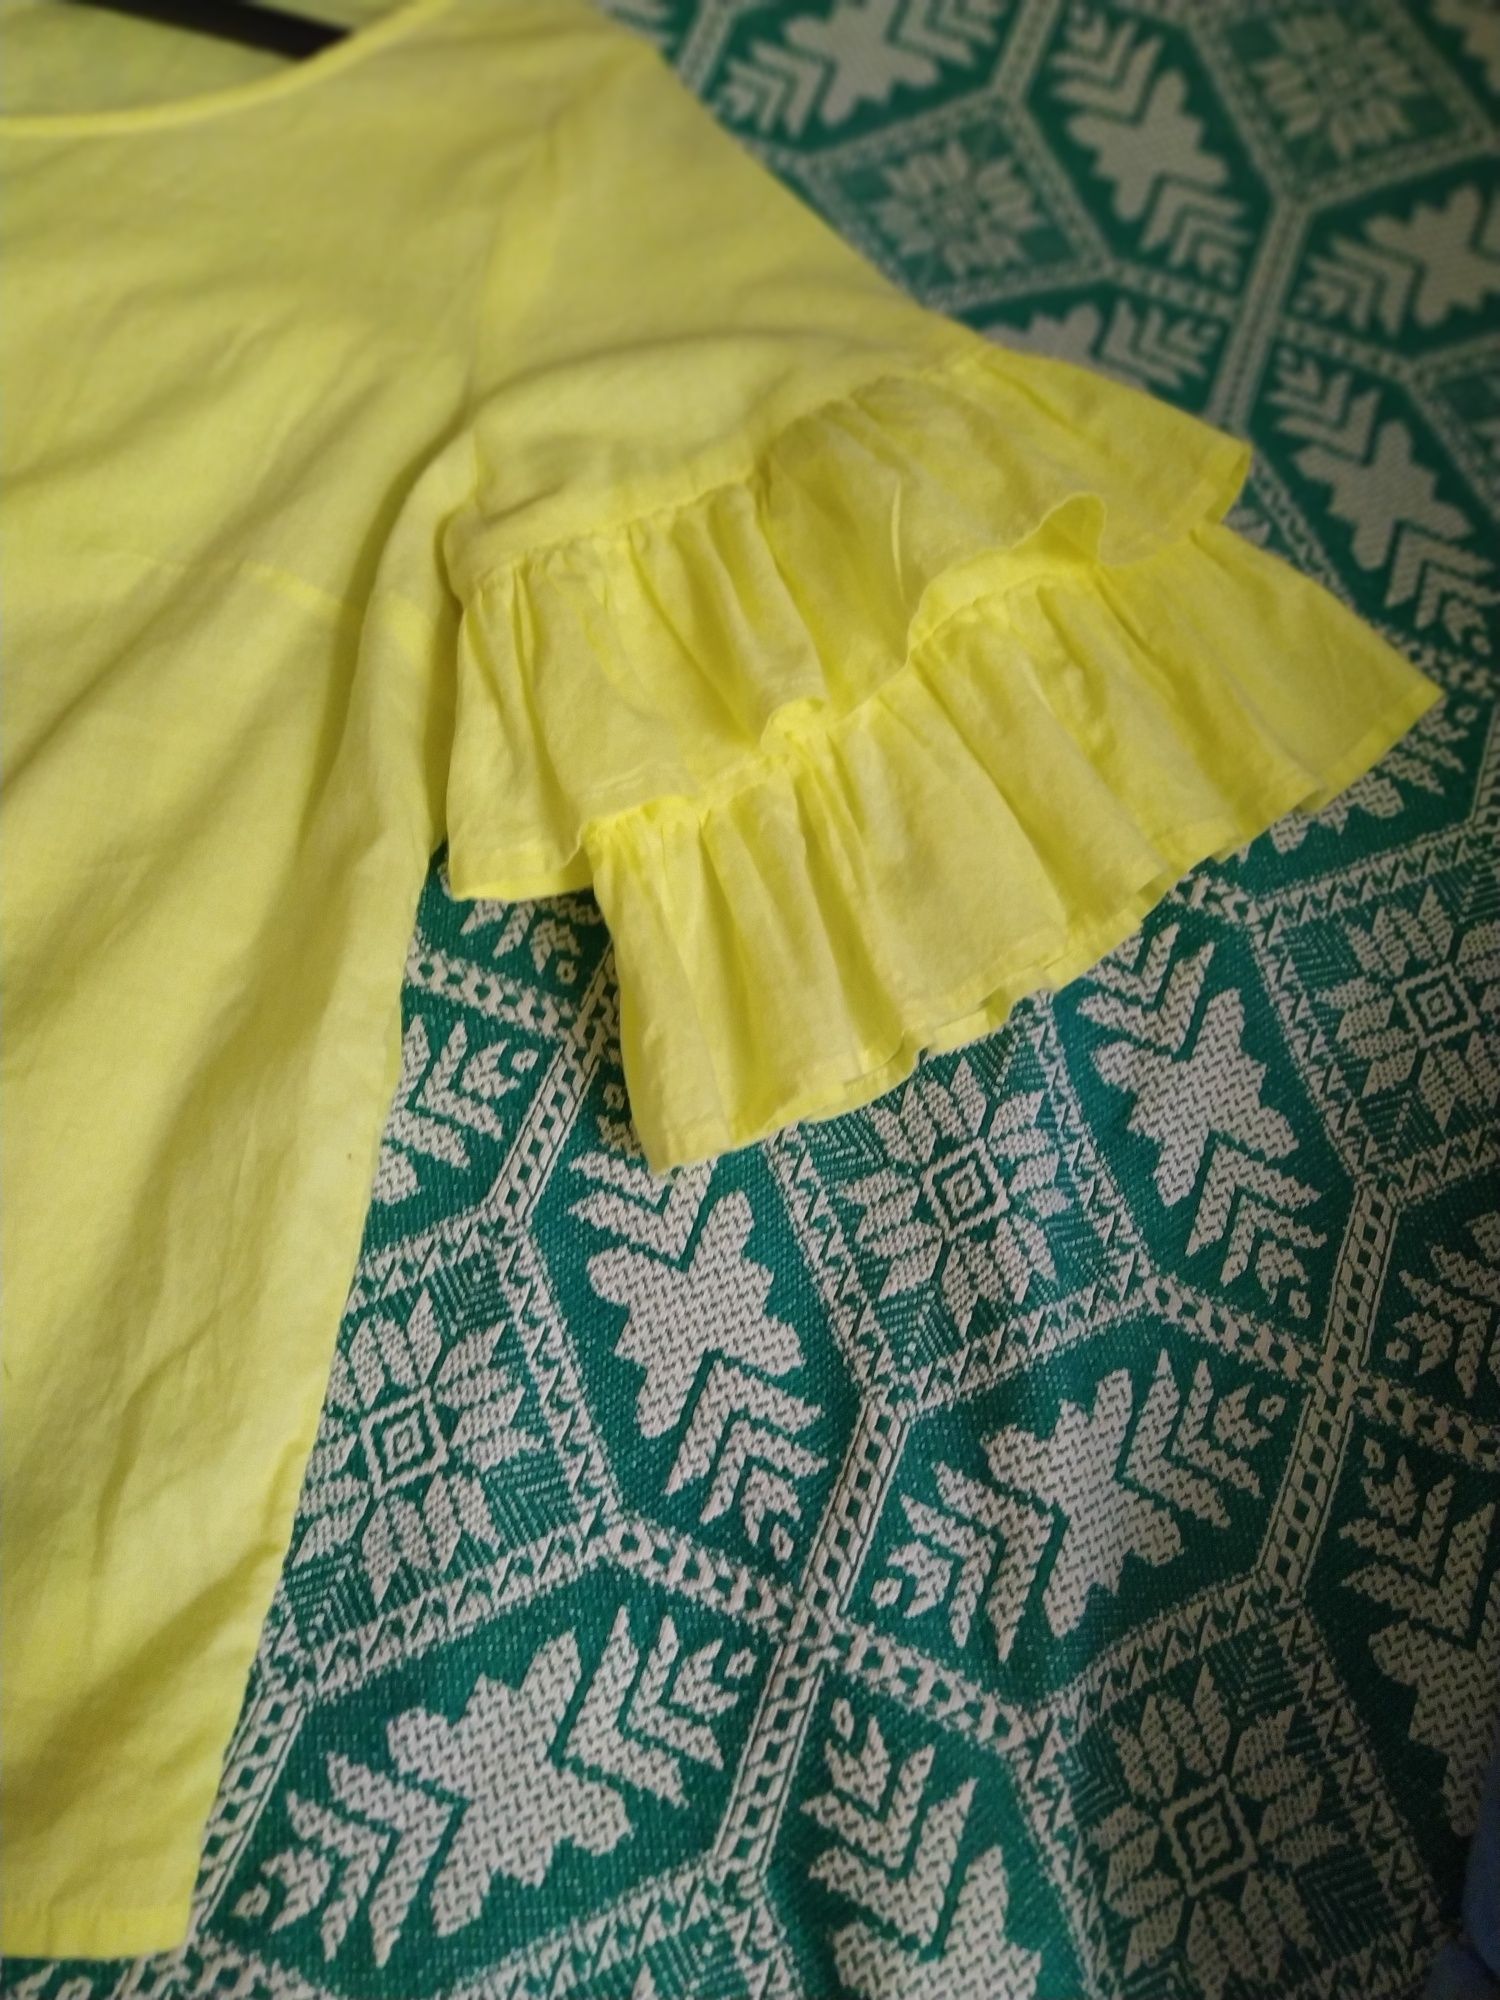 Лёгкая,летняя блузка,  х.б. жёлтого цвета,как солнышко,разм.48-50 укр.